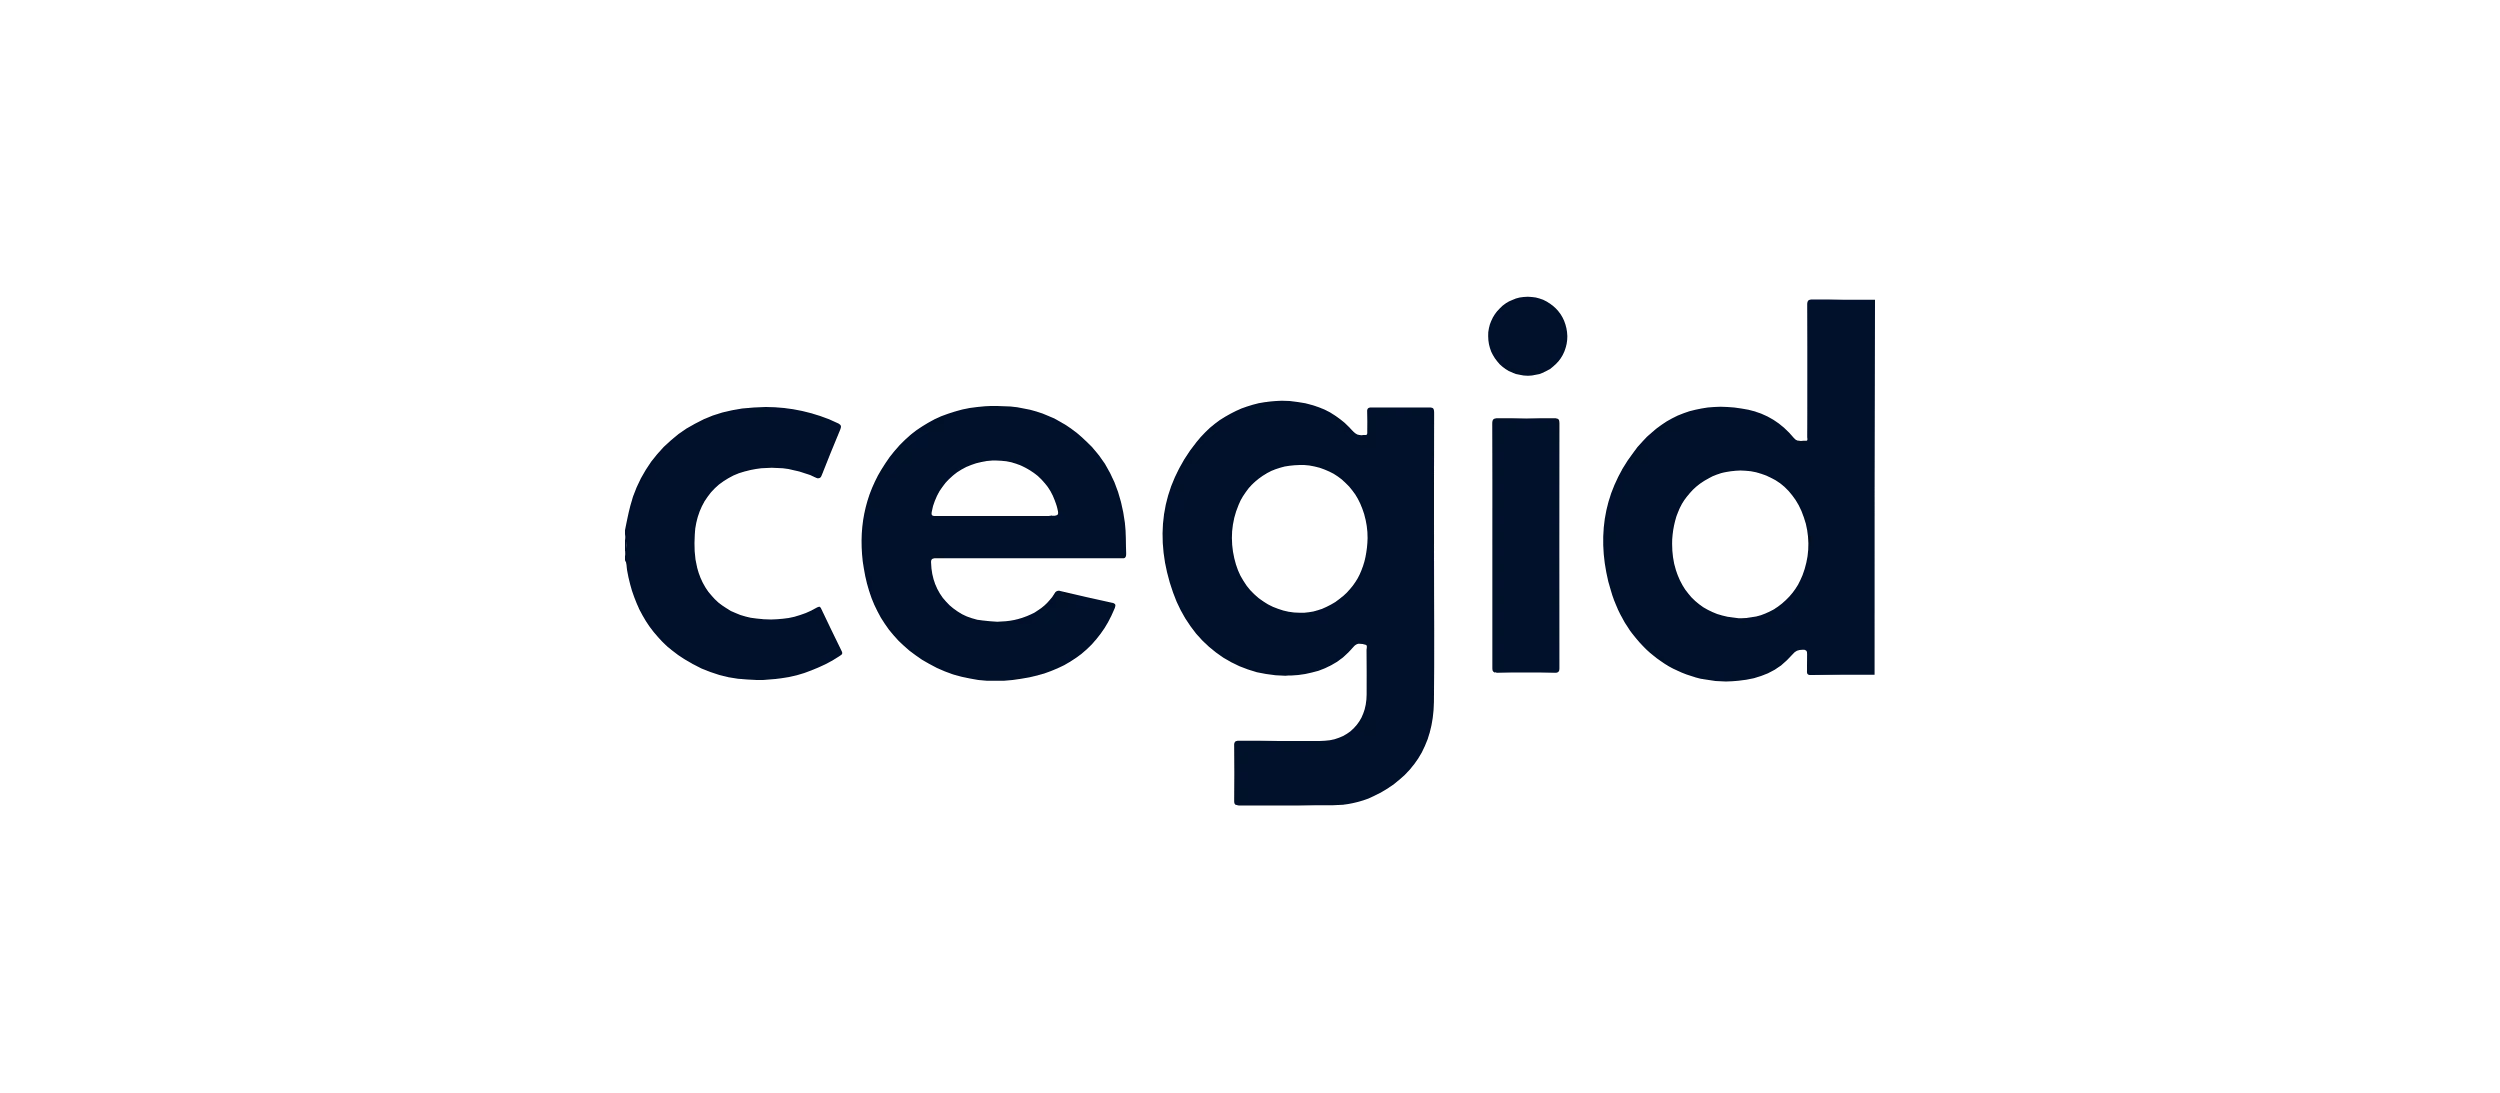 cegid logo